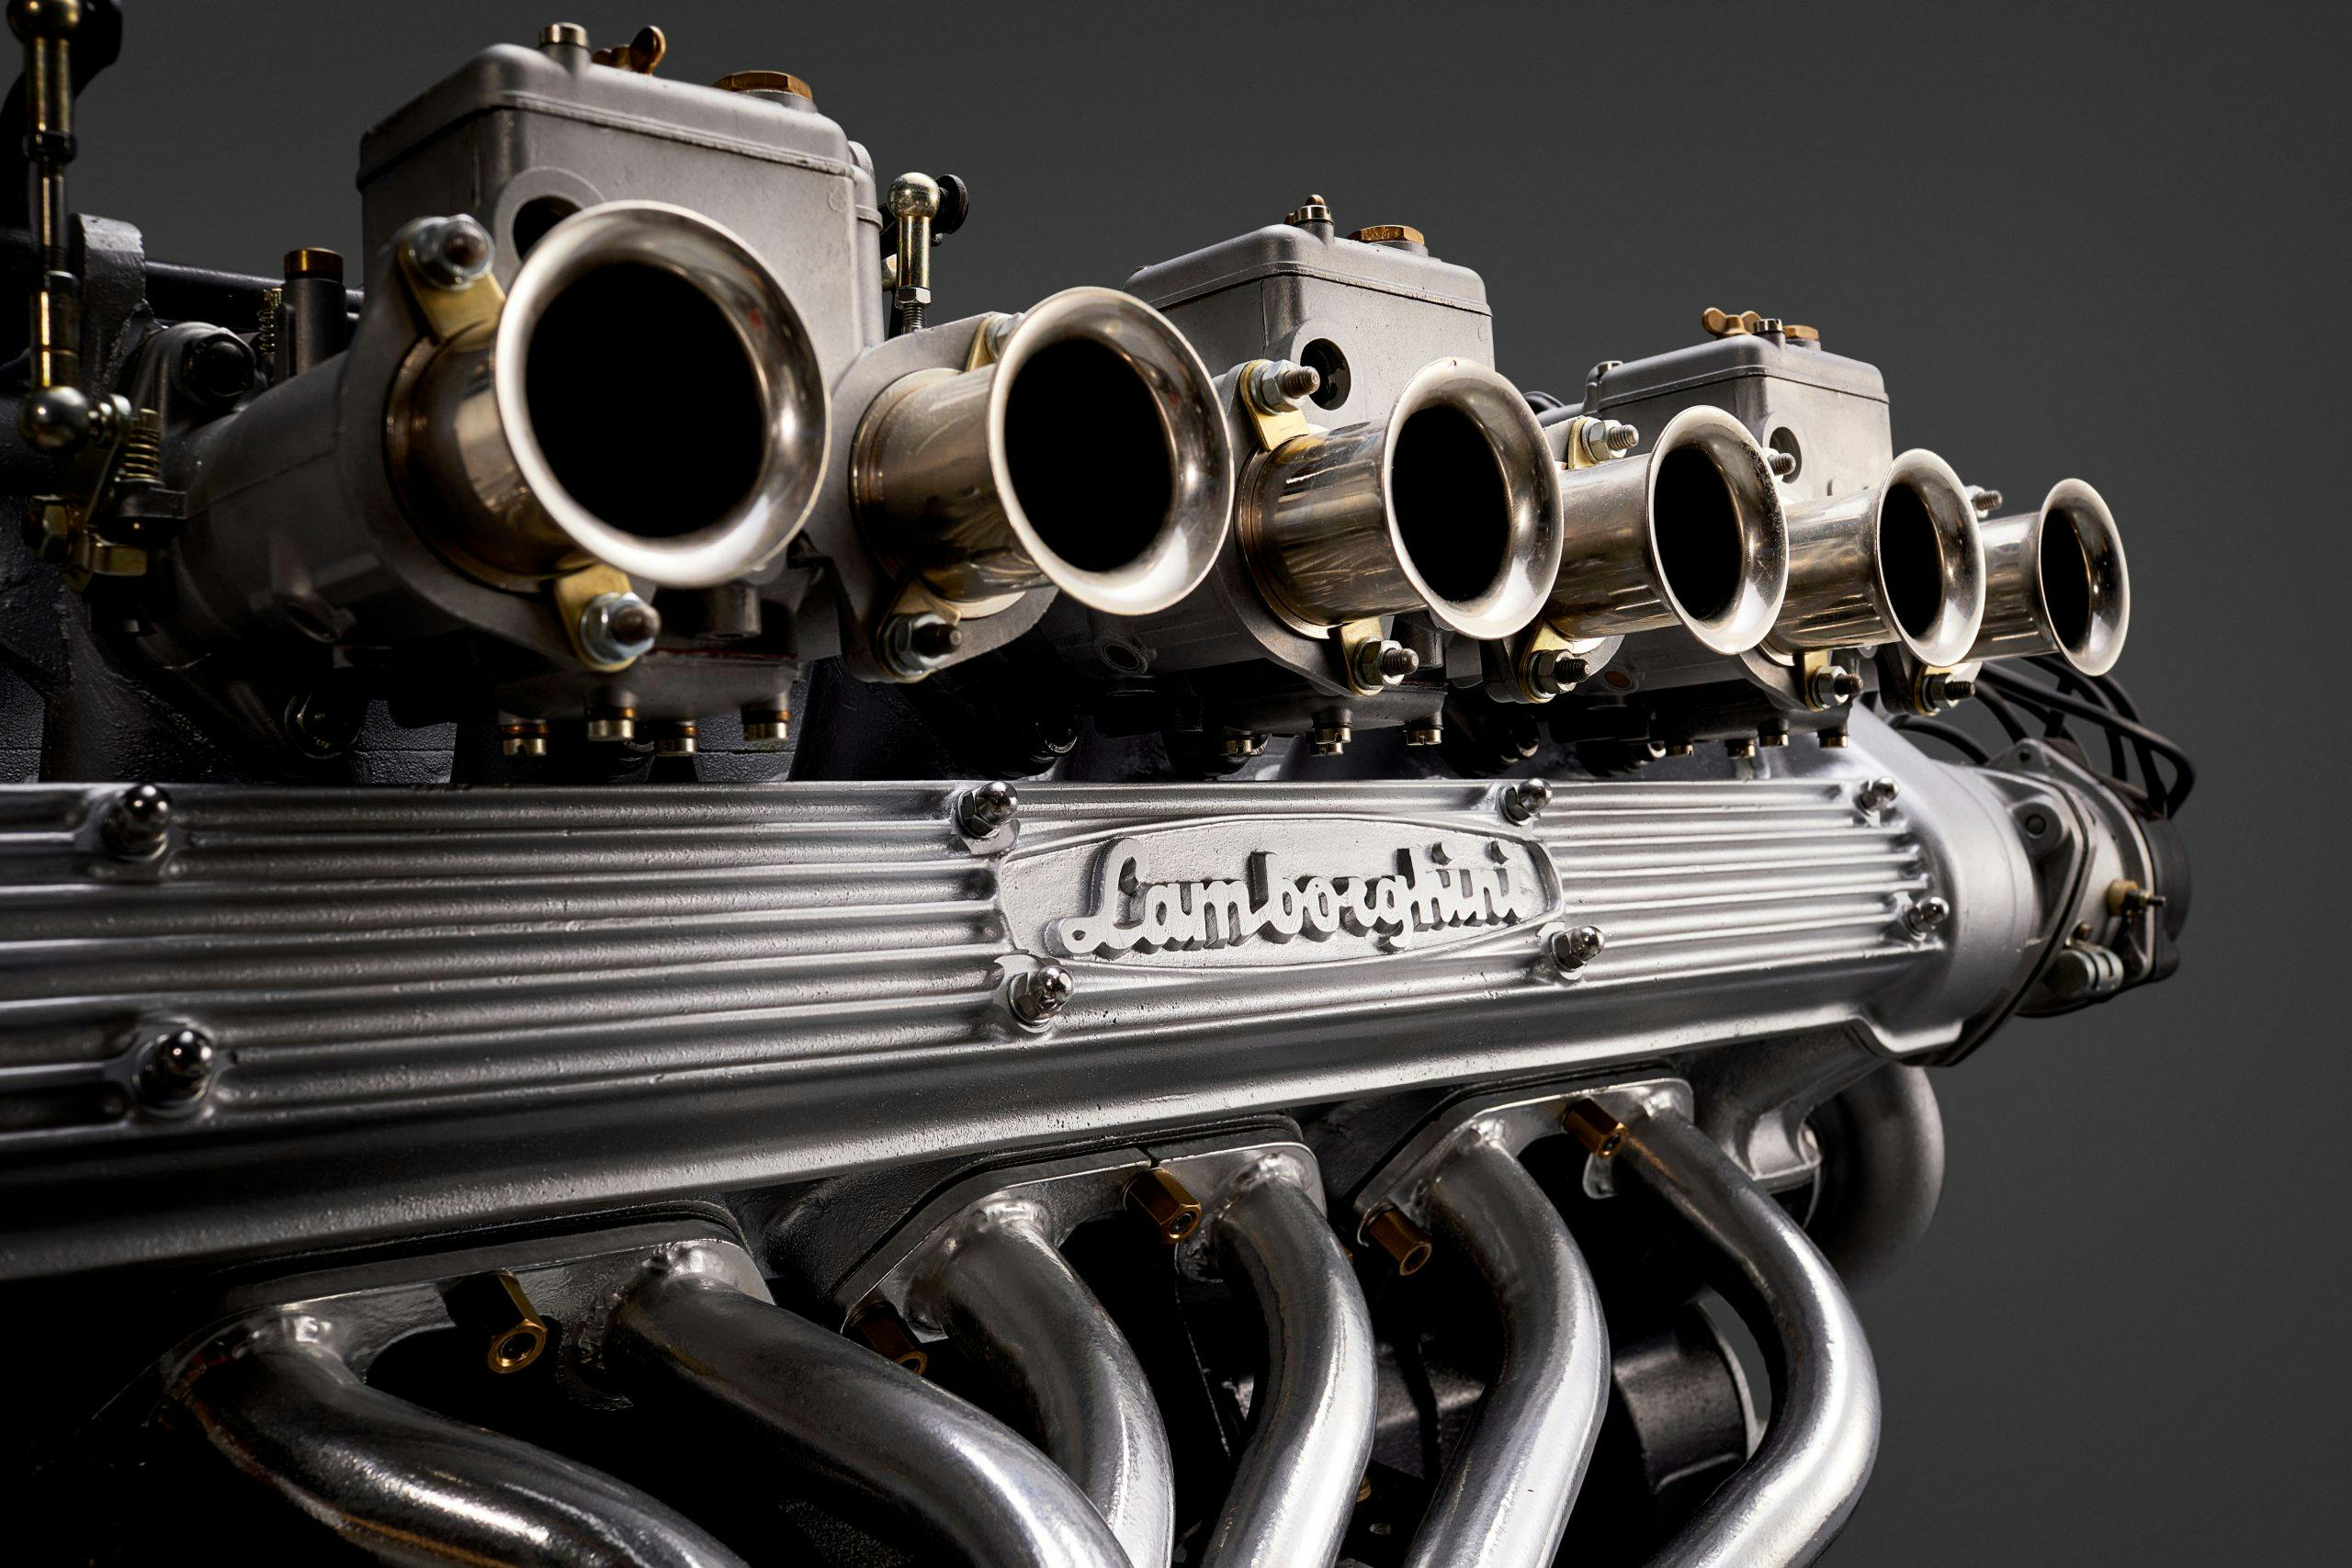 Ferruccio V12 Lamborghini Engine detail